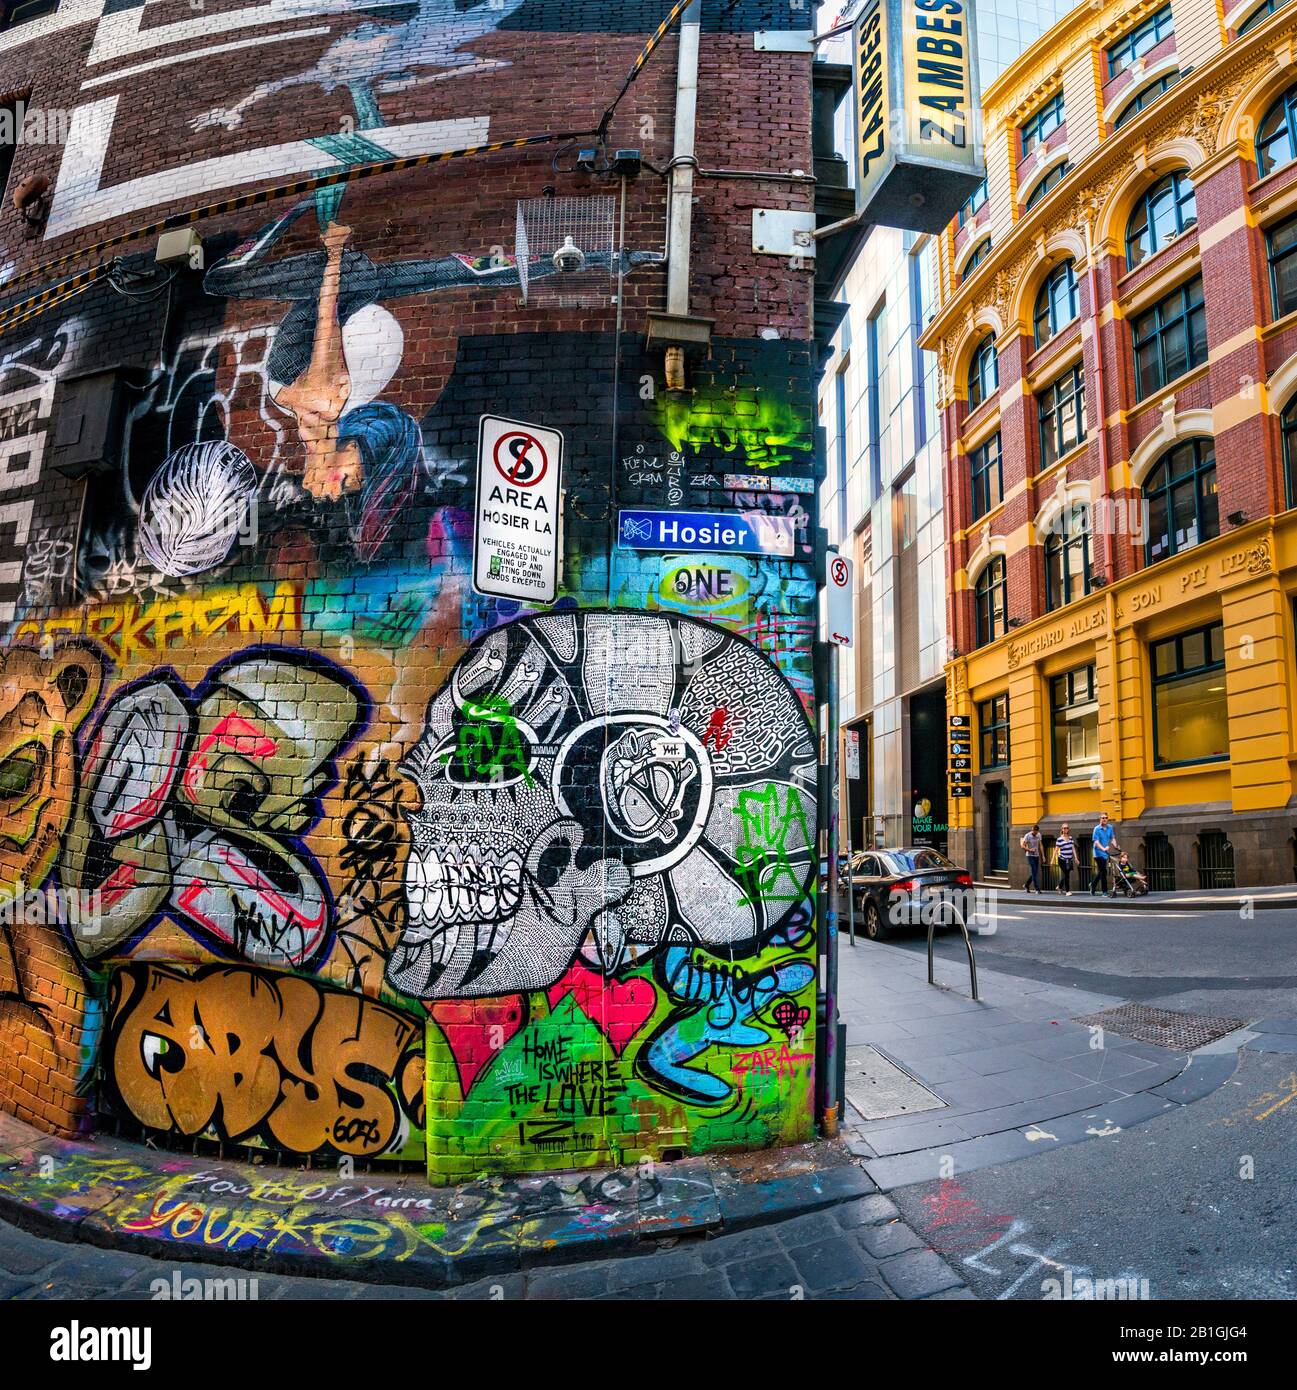 Pittura del cranio e vari disegni dipinti, graffiti coperto laneway con la famiglia passeggiando lungo la strada in background. Hosier Street, Melbourne Lan Foto Stock